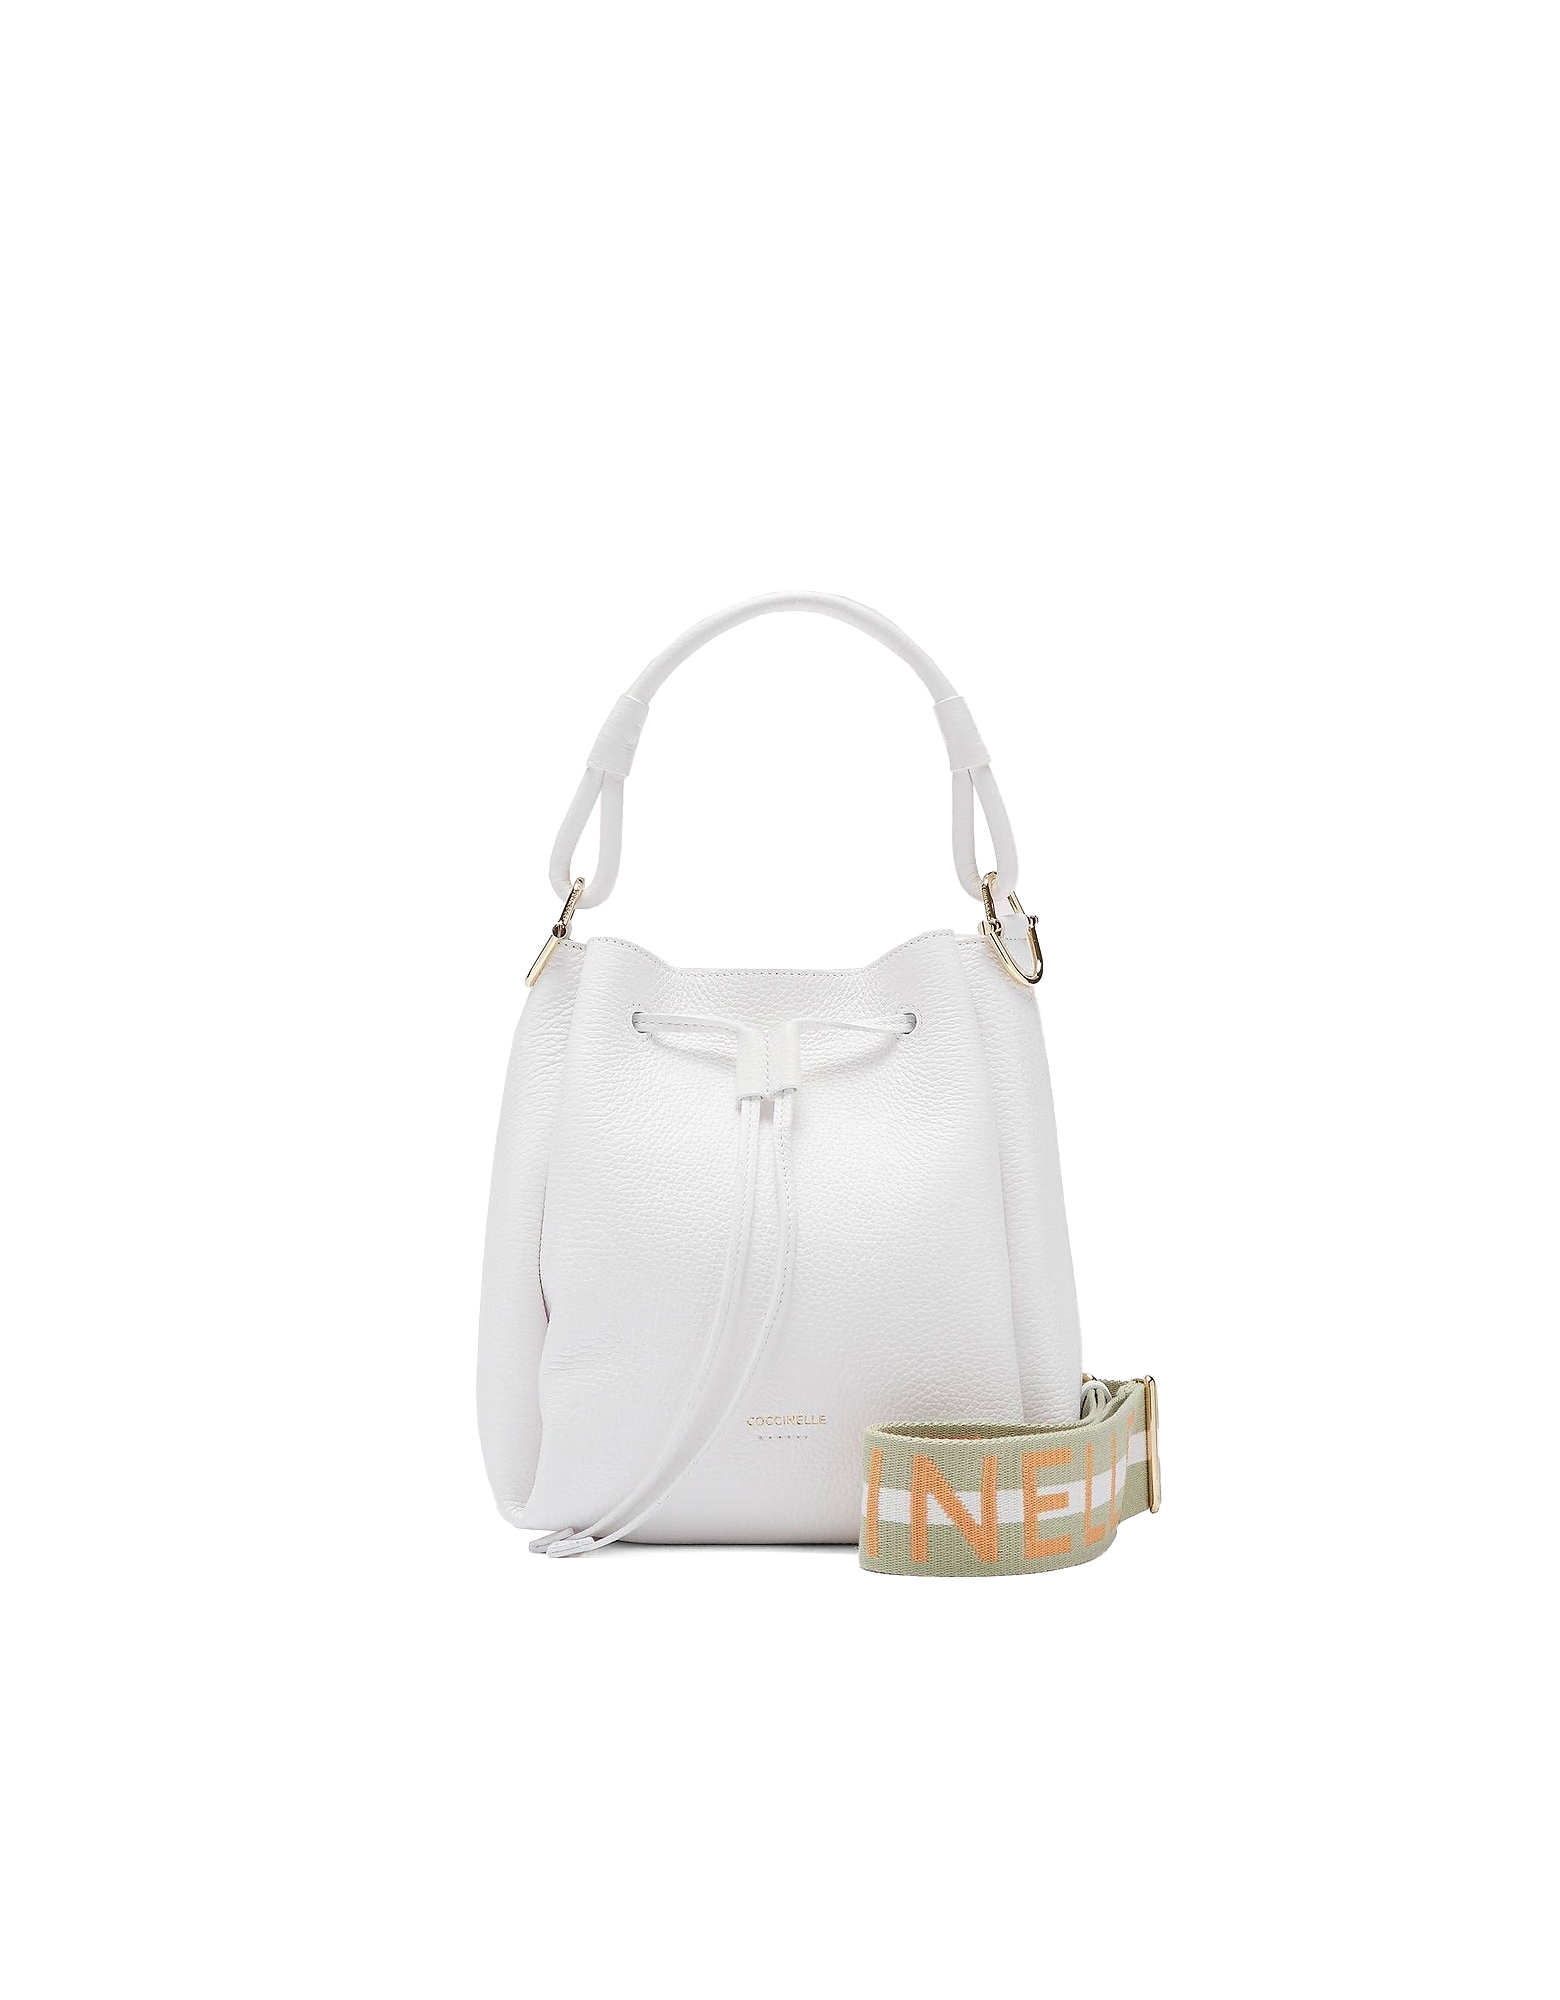 Coccinelle Designer Handbags Women's Bag In White